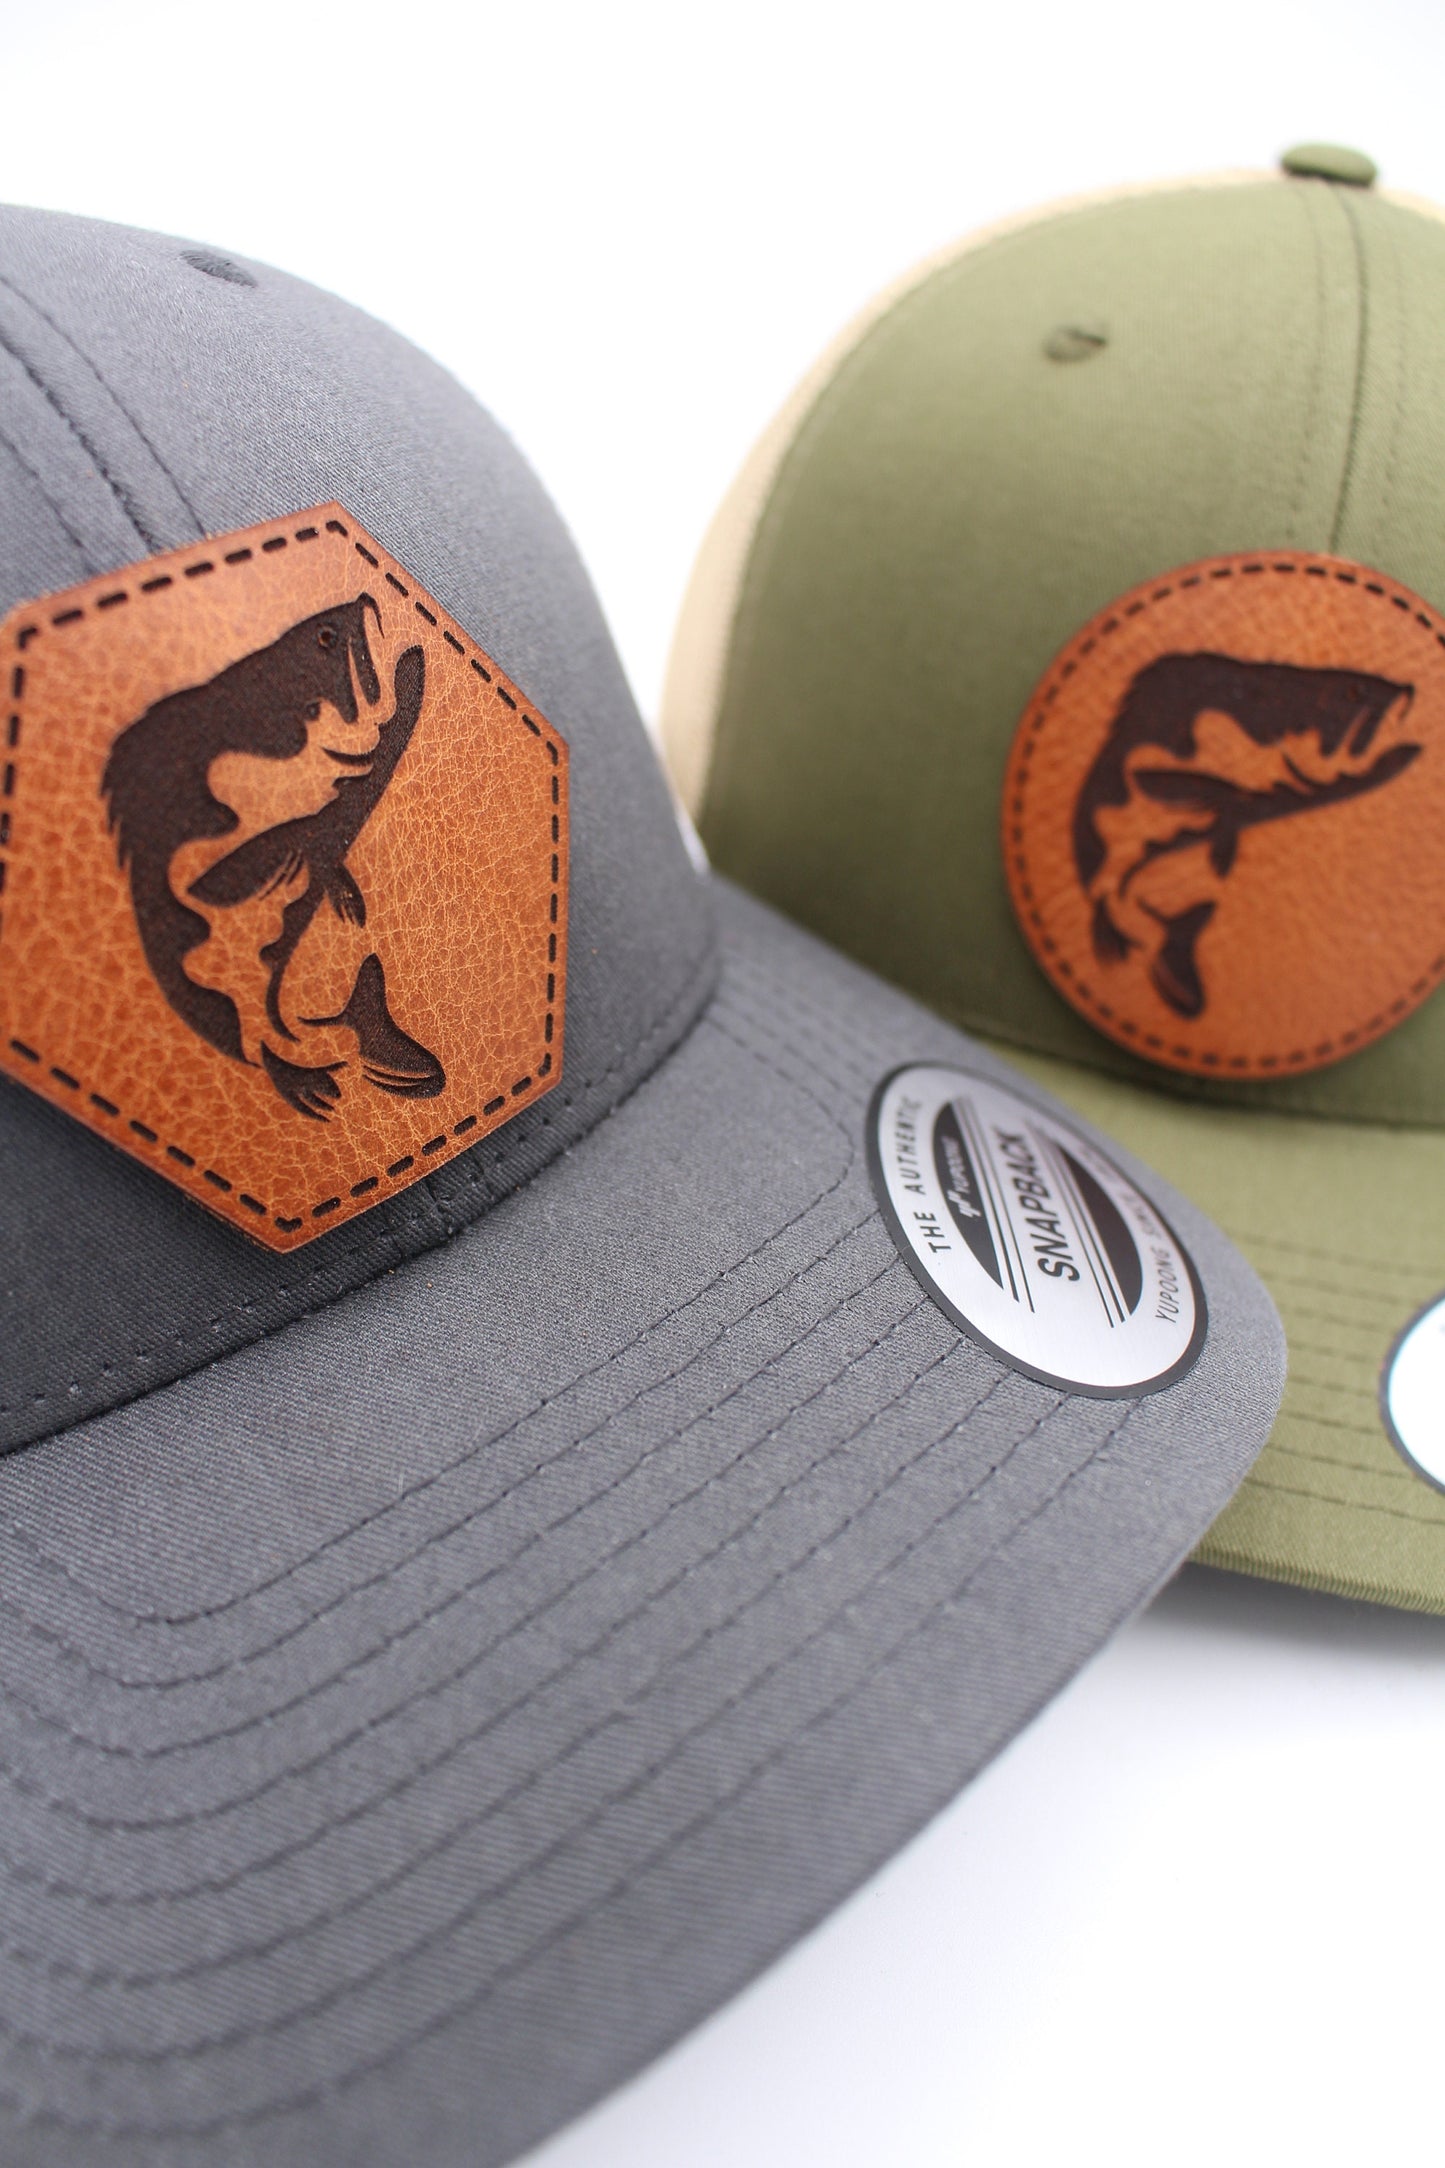 Bass Silhouette Trucker Hat| Fishing Hat| Outdoors Trucker Hat